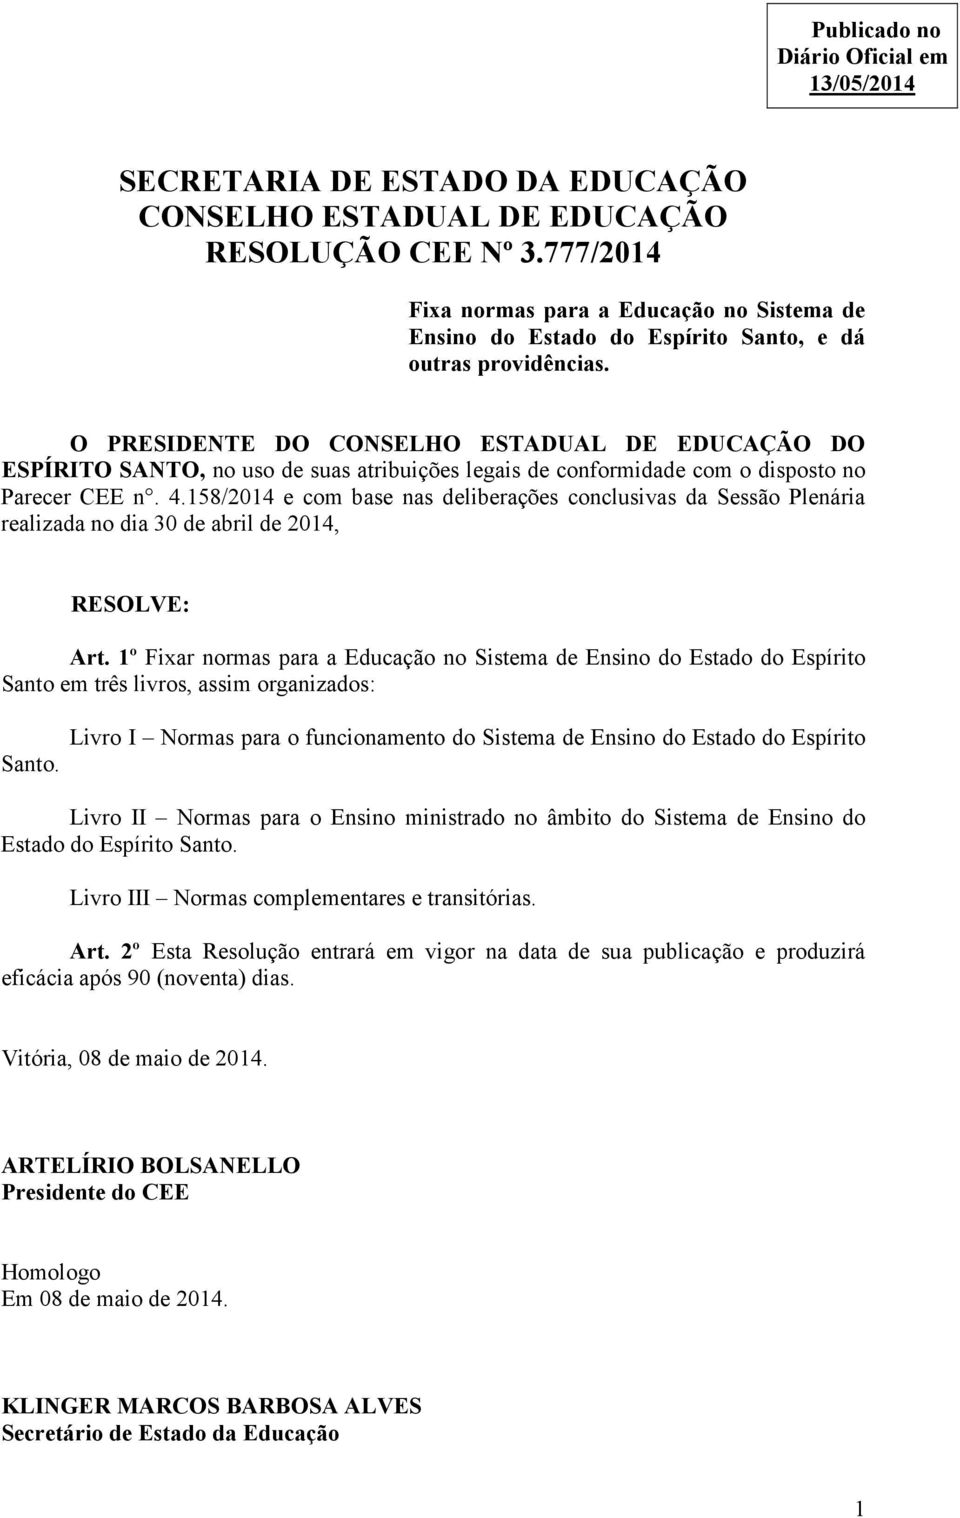 O PRESIDENTE DO CONSELHO ESTADUAL DE EDUCAÇÃO DO ESPÍRITO SANTO, no uso de suas atribuições legais de conformidade com o disposto no Parecer CEE n. 4.